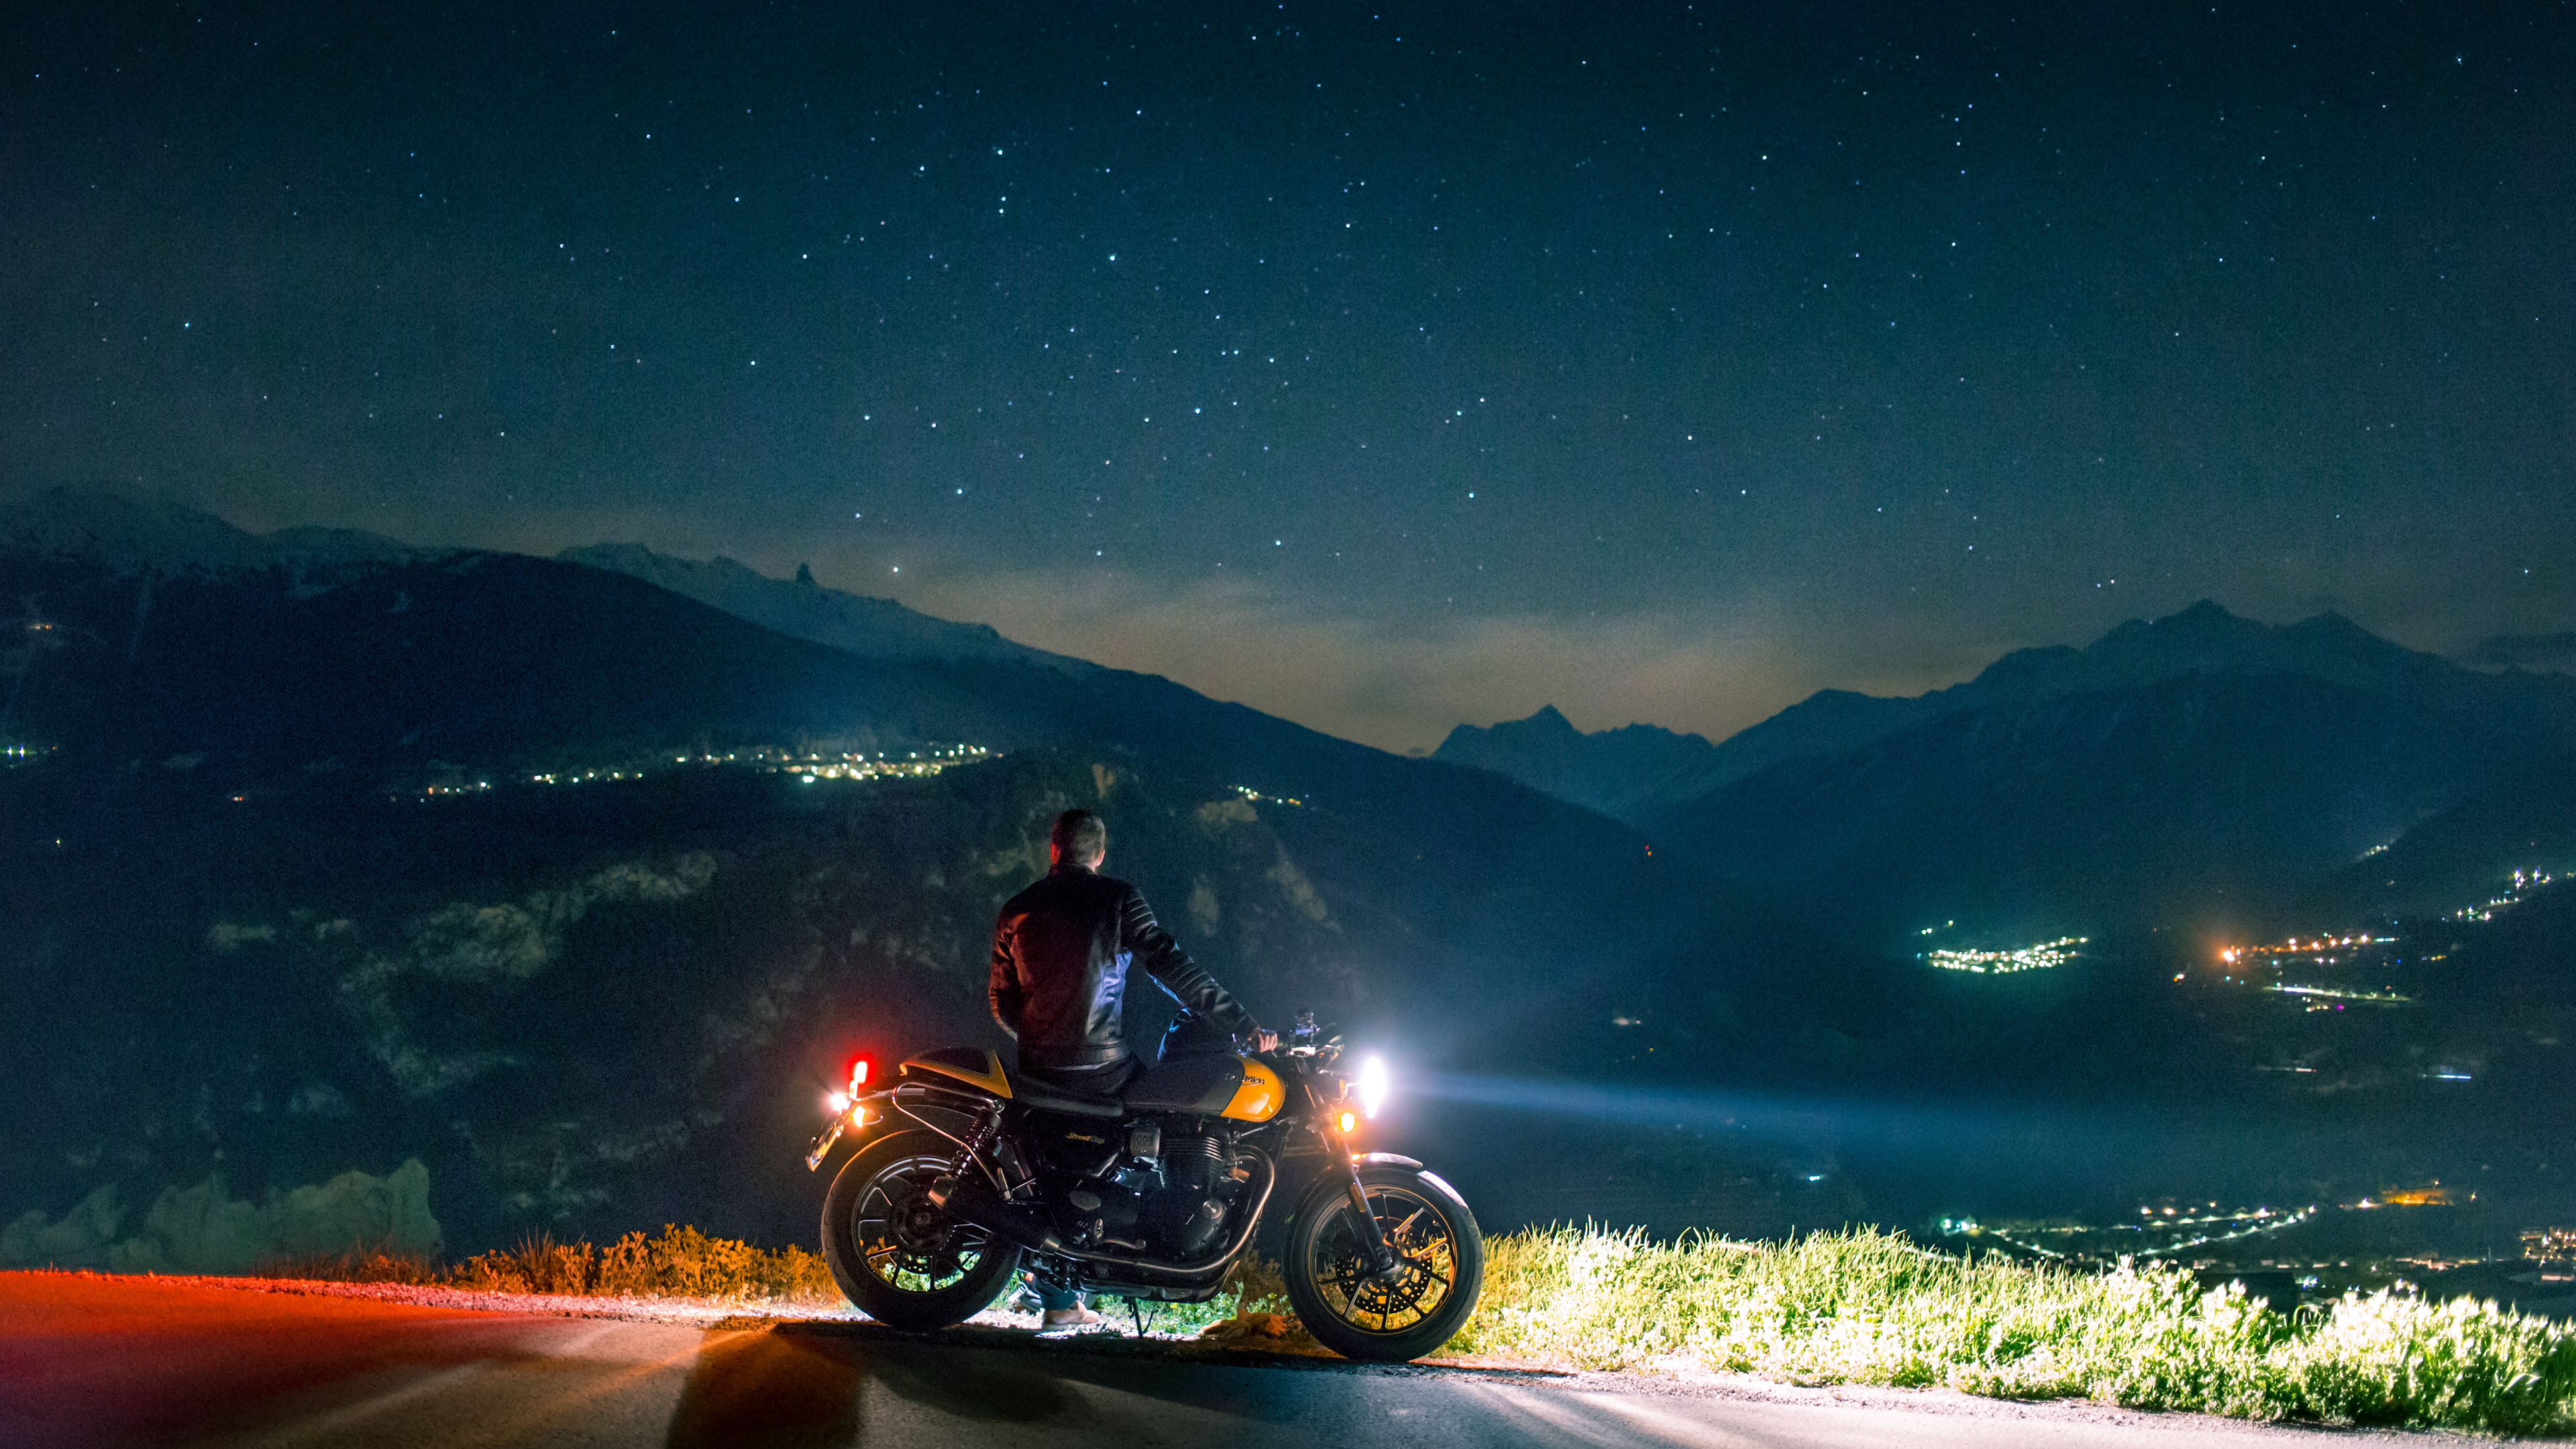 Homme Monté Sur Moto Sur Route Pendant la Nuit. Wallpaper in 3840x2160 Resolution